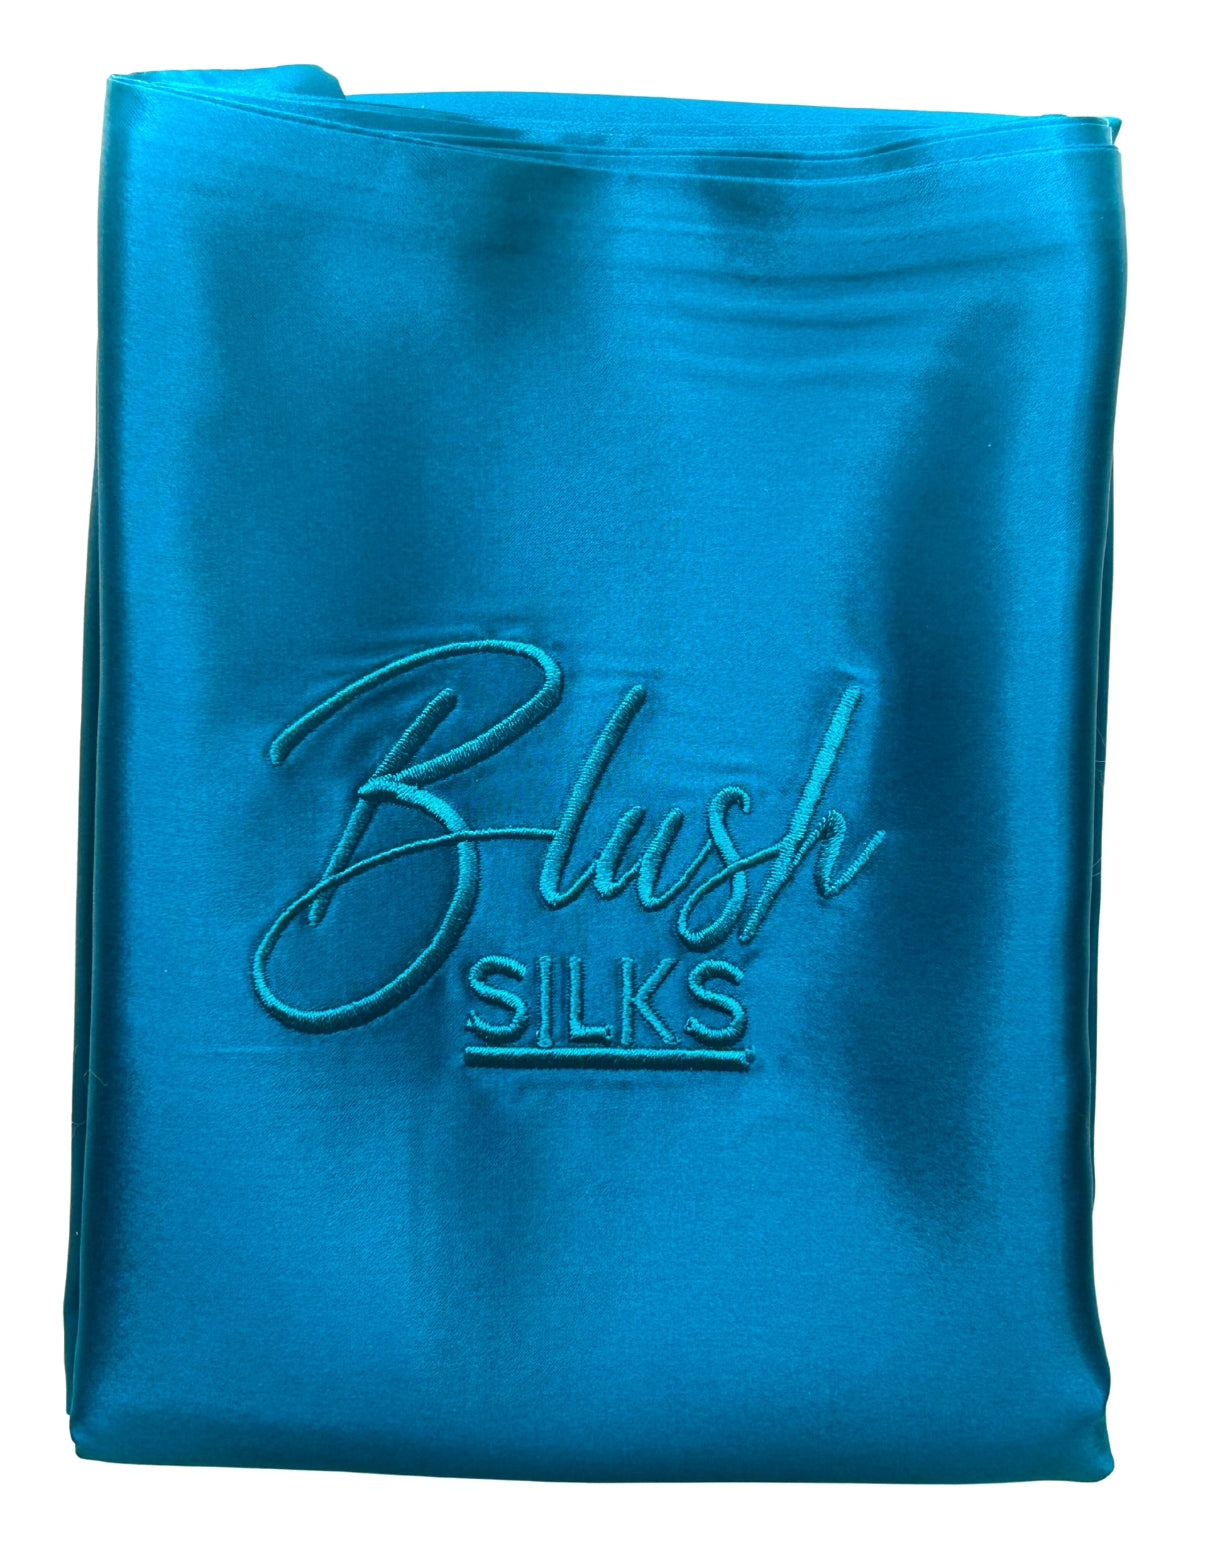 NEW Blush Silks 100% Pure Mulberry Silk Pillowcase - Cobalt